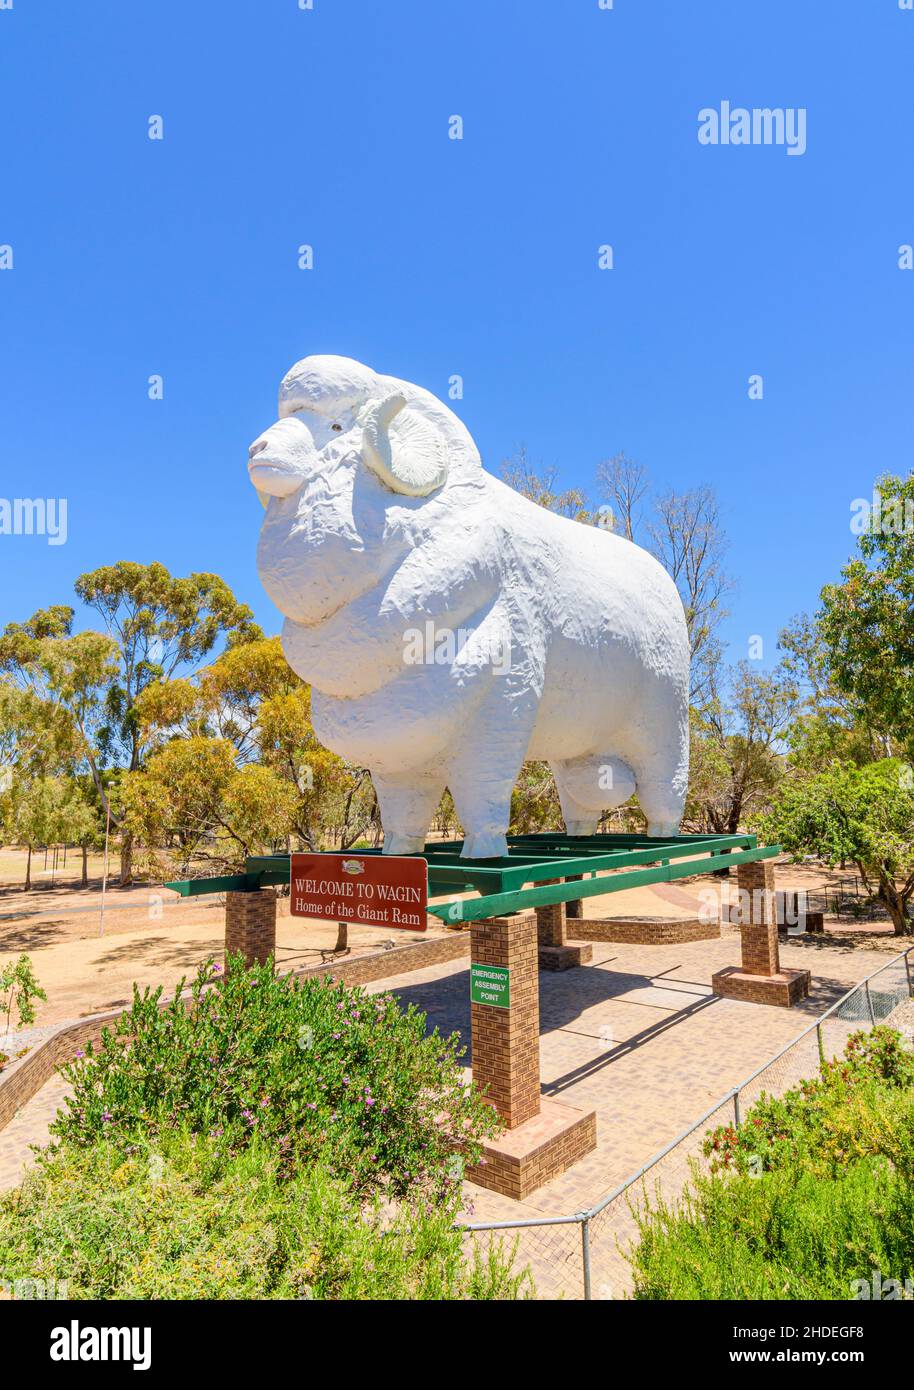 La Grande RAM al Giant RAM Tourist Park nella città di campagna di Wagin, Australia Occidentale, Australia Foto Stock